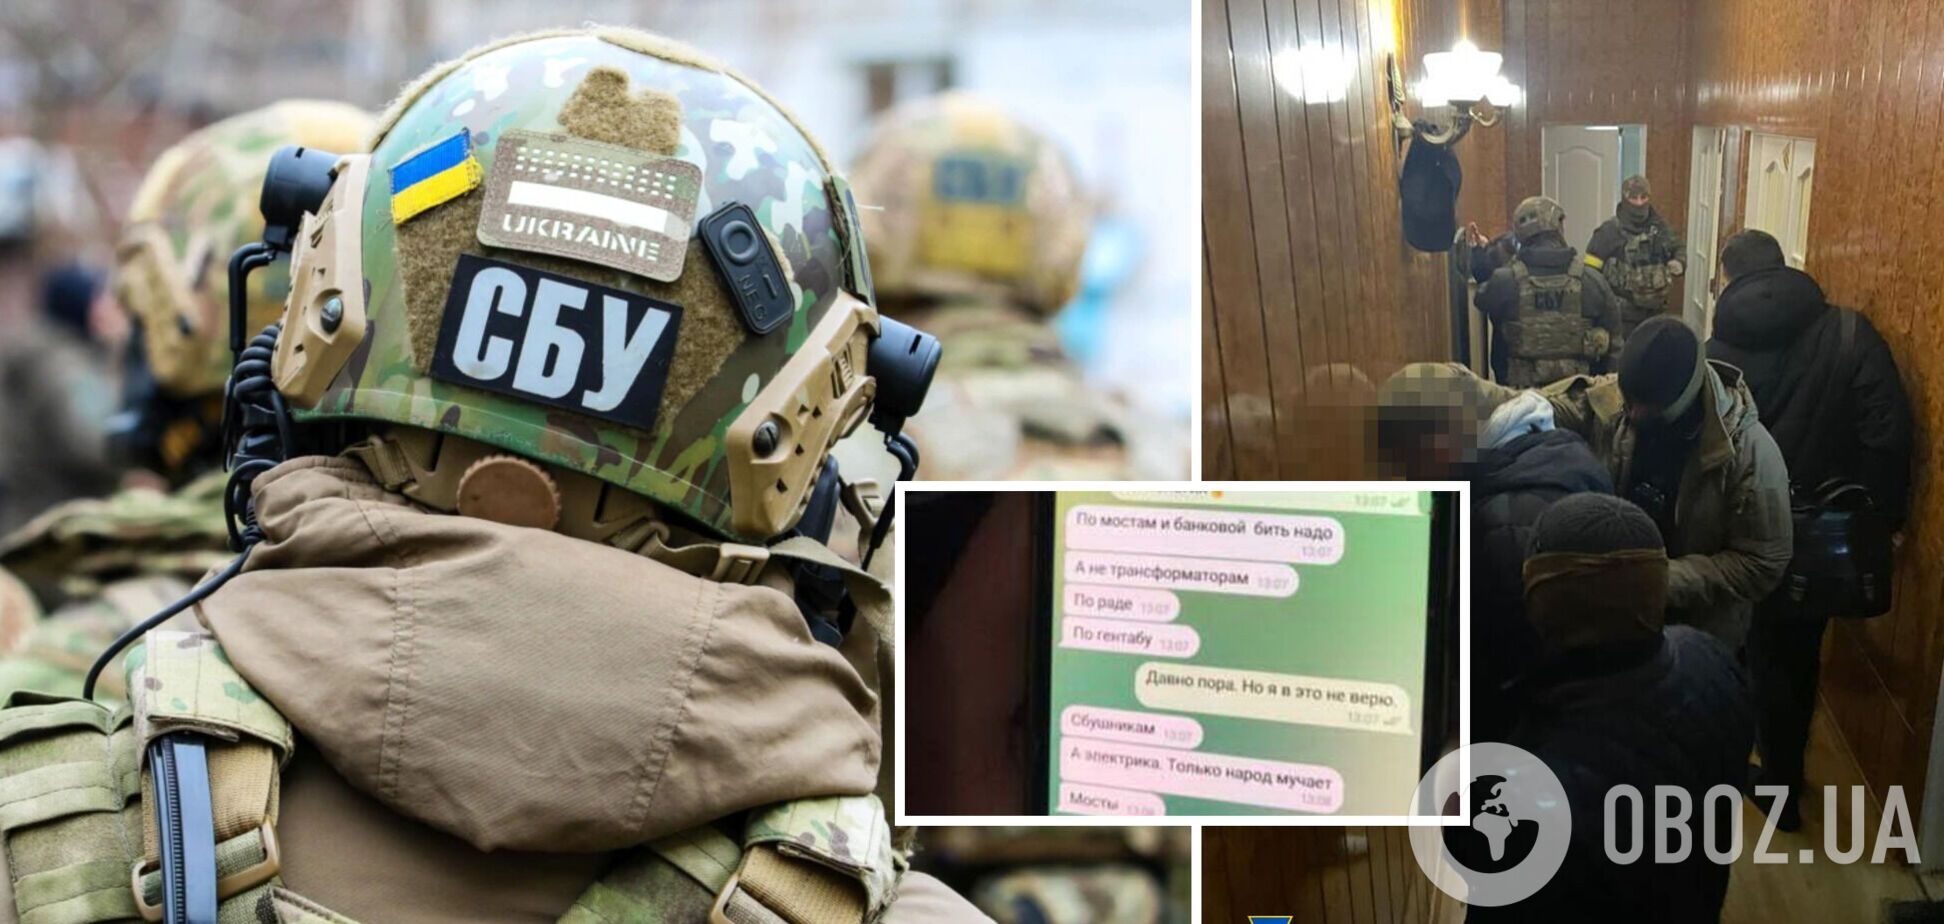 СБУ задержала в Одессе супругов-шпионов, которые готовили ракетный удар по силам ПВО и складам ВСУ. Фото и видео